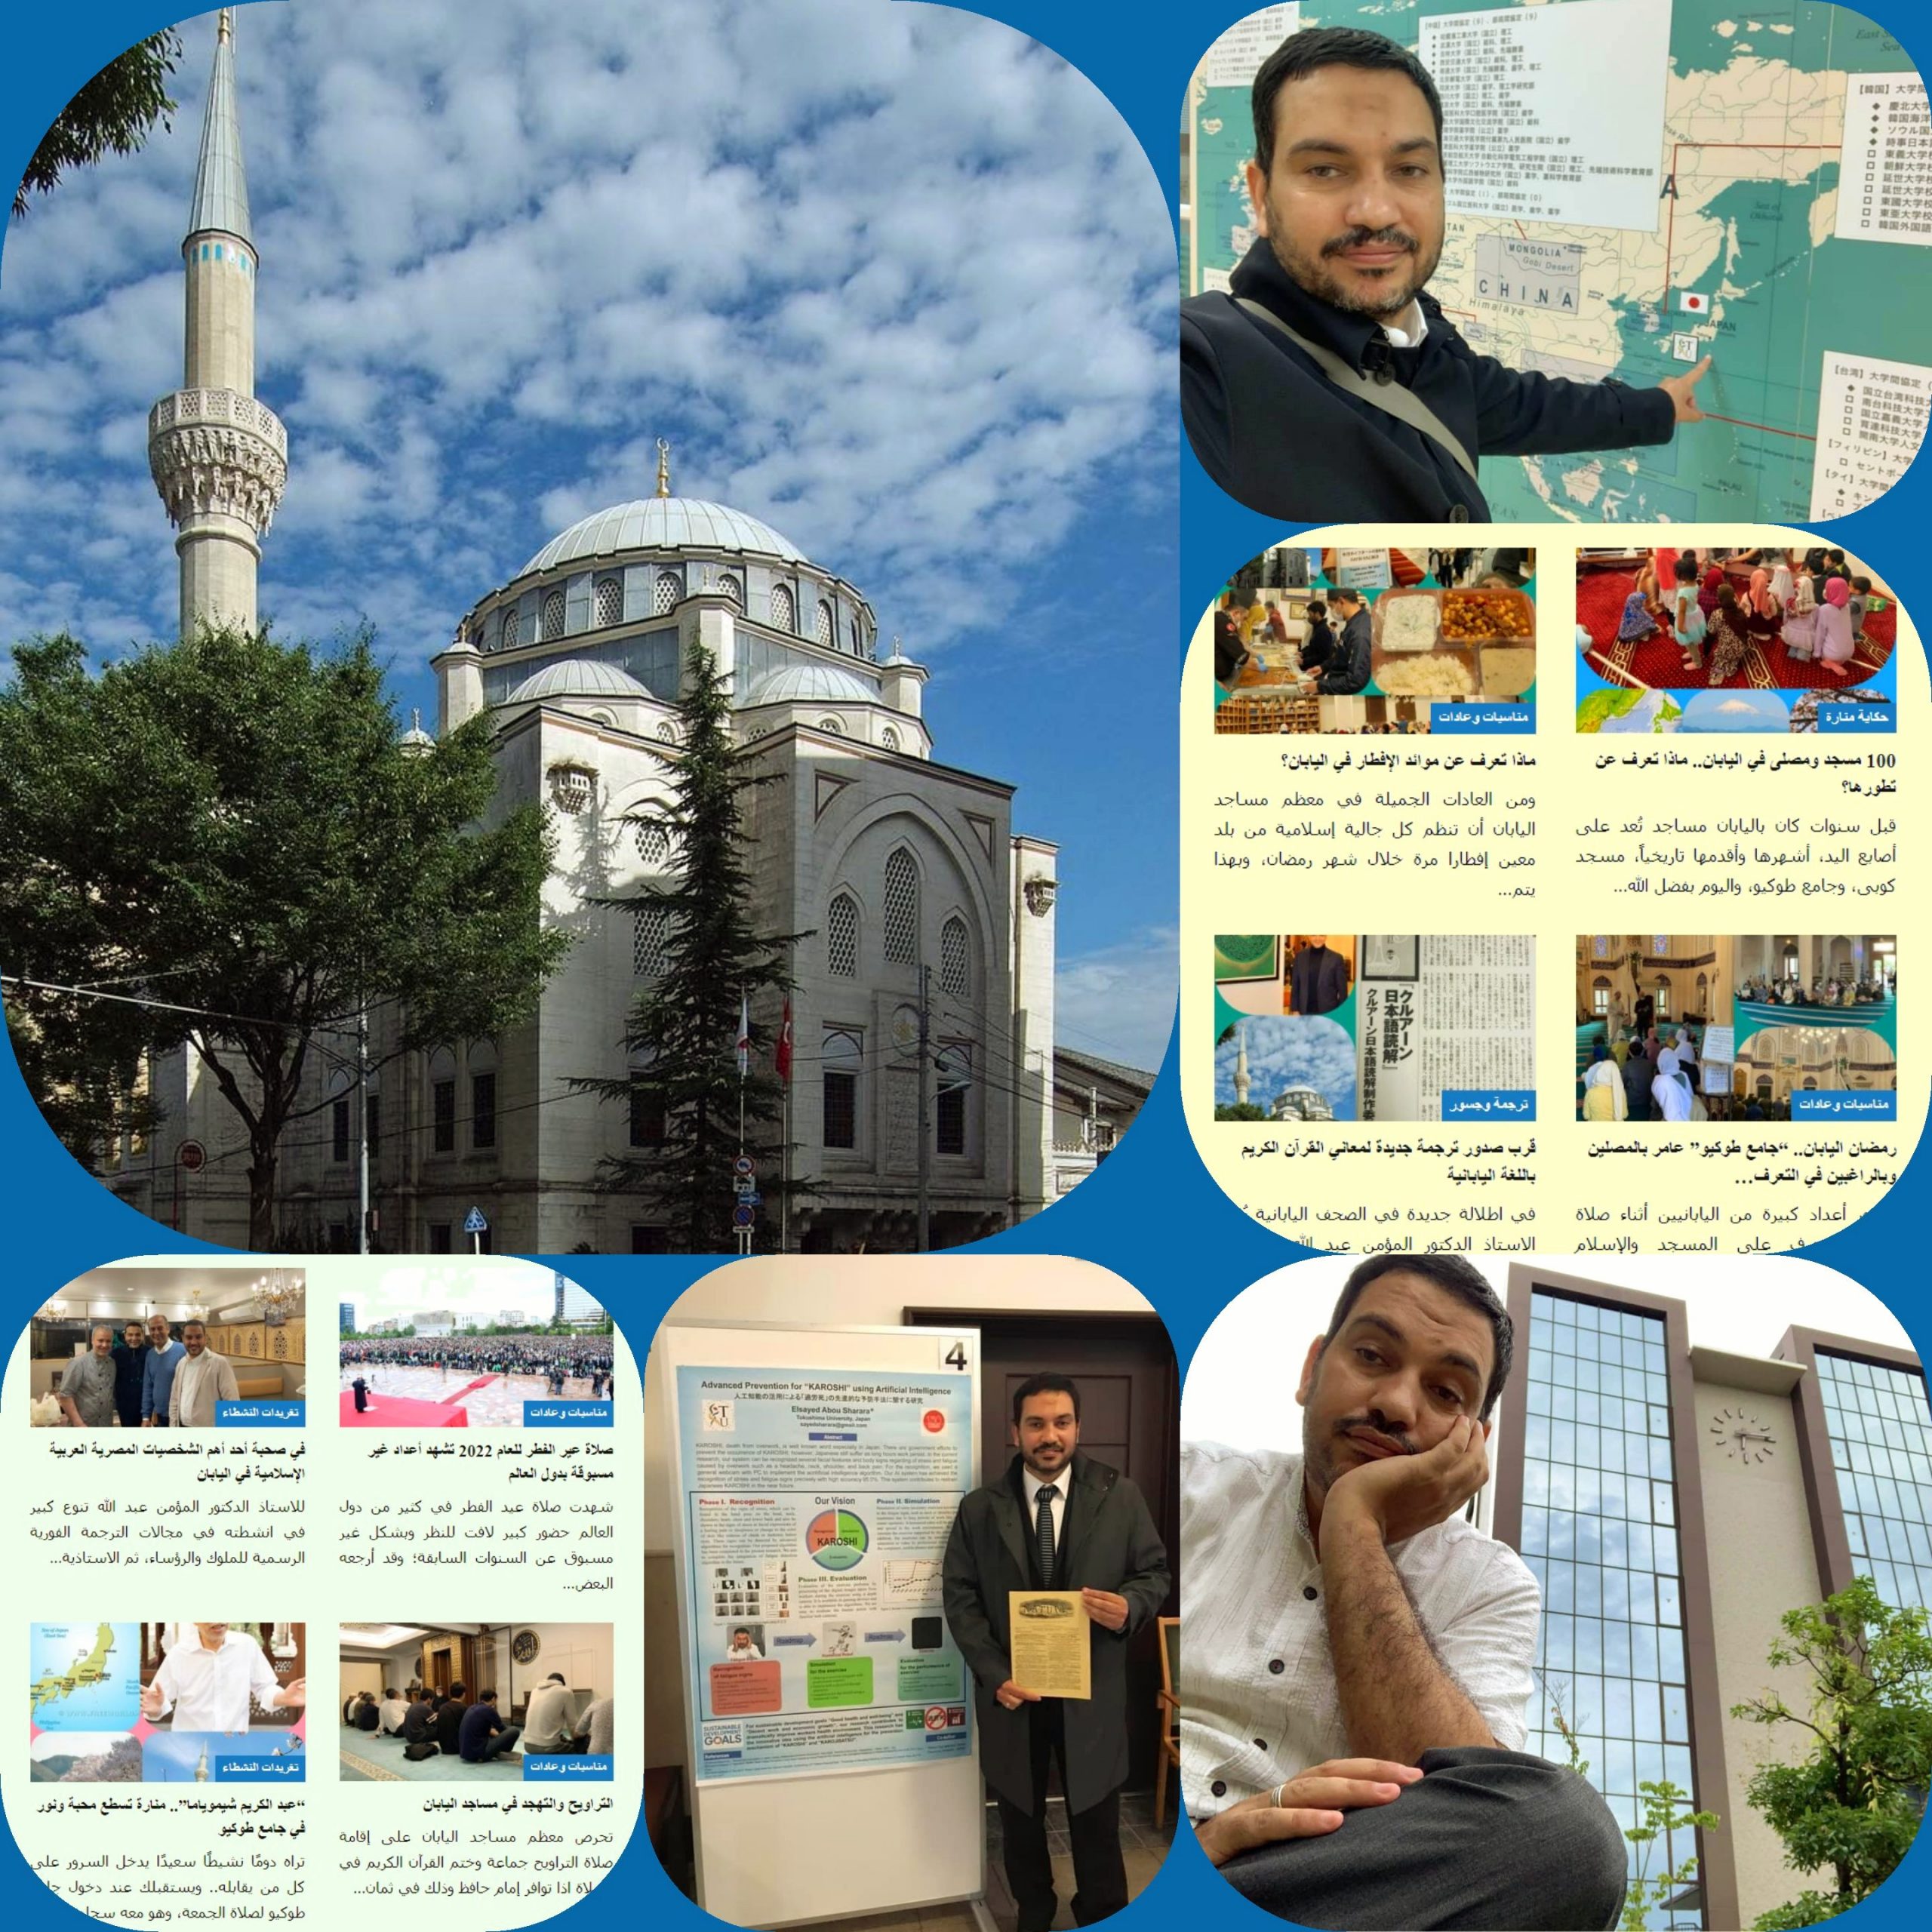 صفحة الأكاديمي المصري الدكتور سيد شرارة المقيم في اليابان تمثل نافذة معرفية هامة من قلب طوكيو